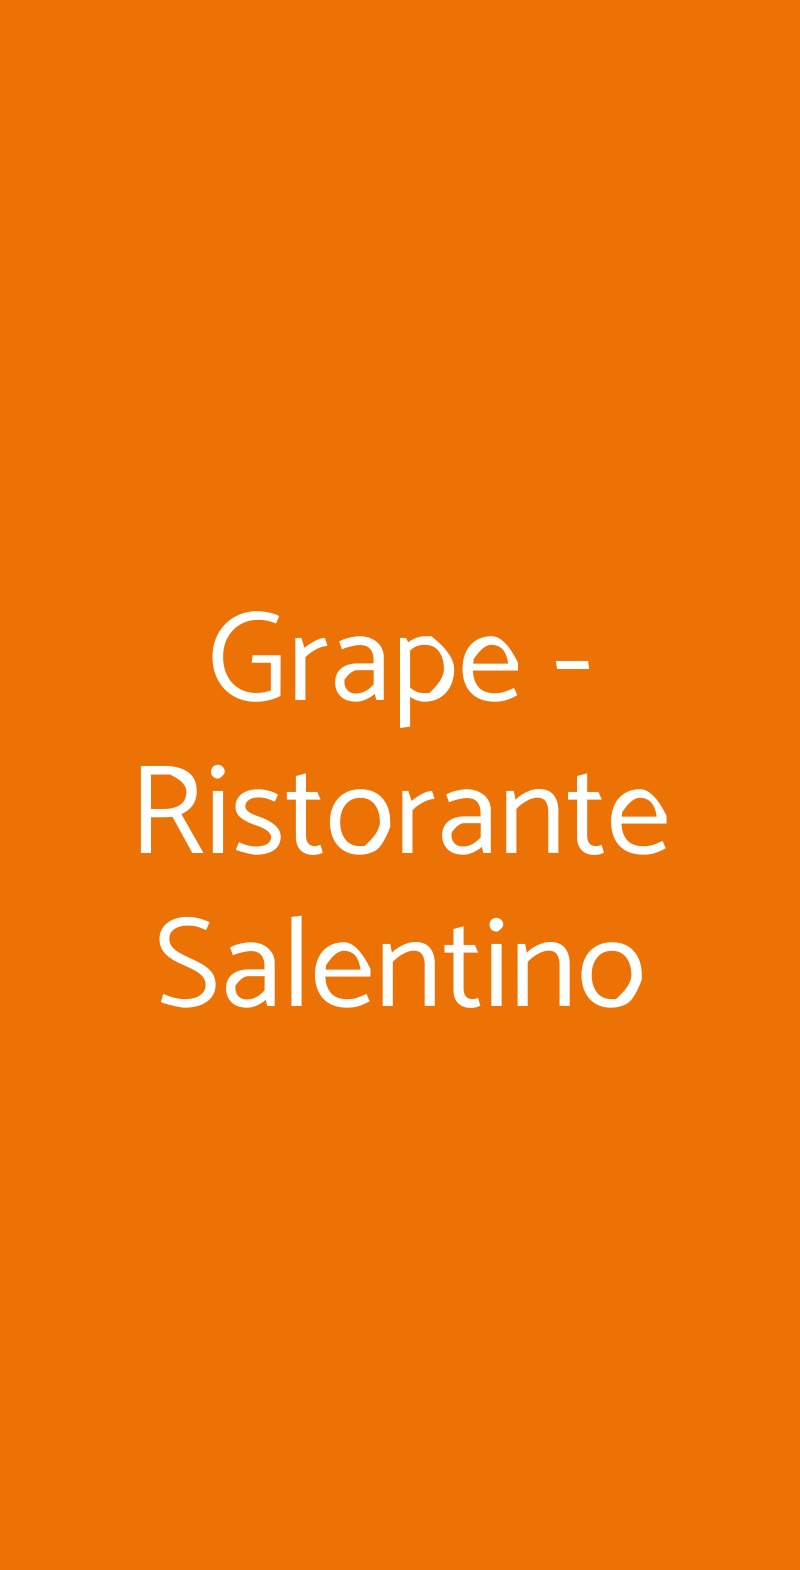 Grape - Ristorante Salentino Milano menù 1 pagina